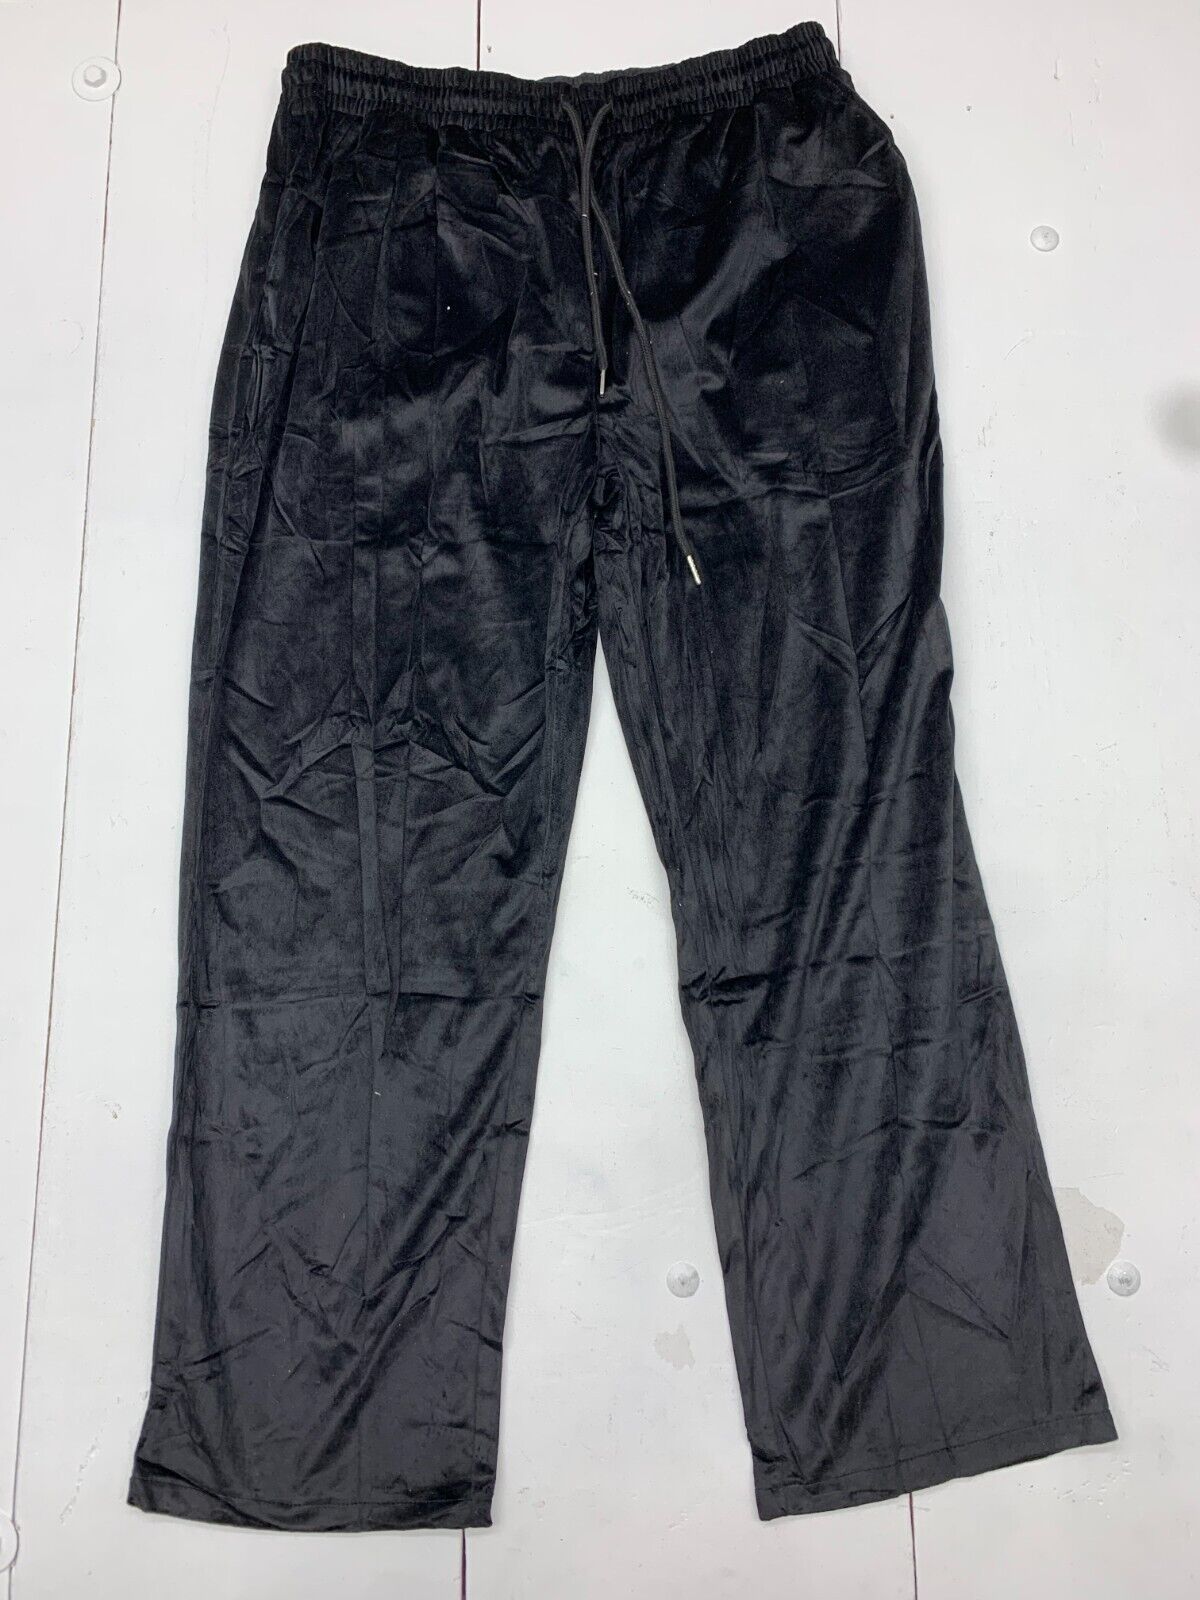 Coofandy Womens Black Drawstring Pants Size XL - beyond exchange